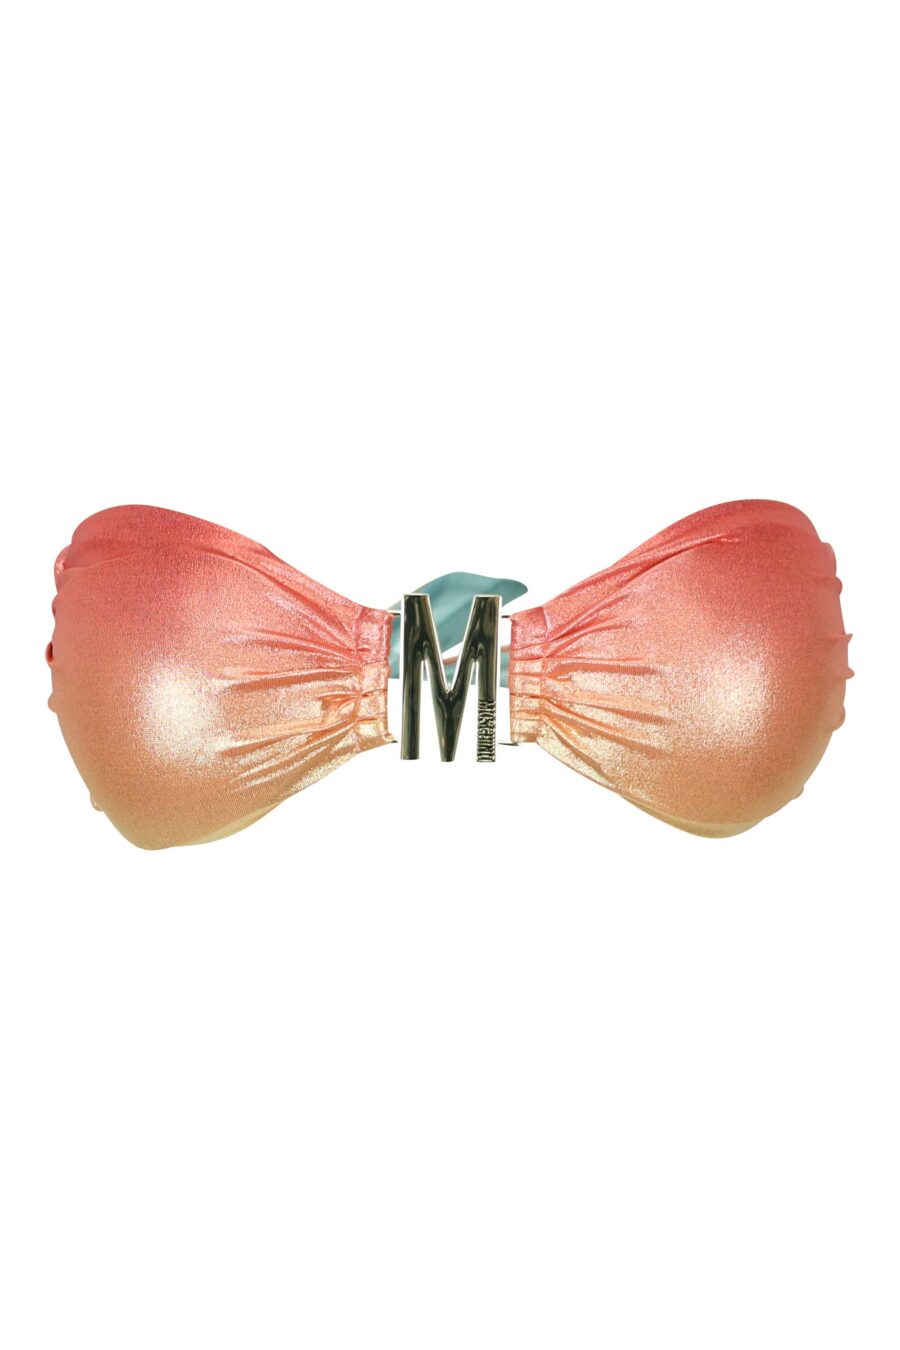 Mehrfarbiges Bikinioberteil mit goldenem "m"-Schriftzug - 667113644493